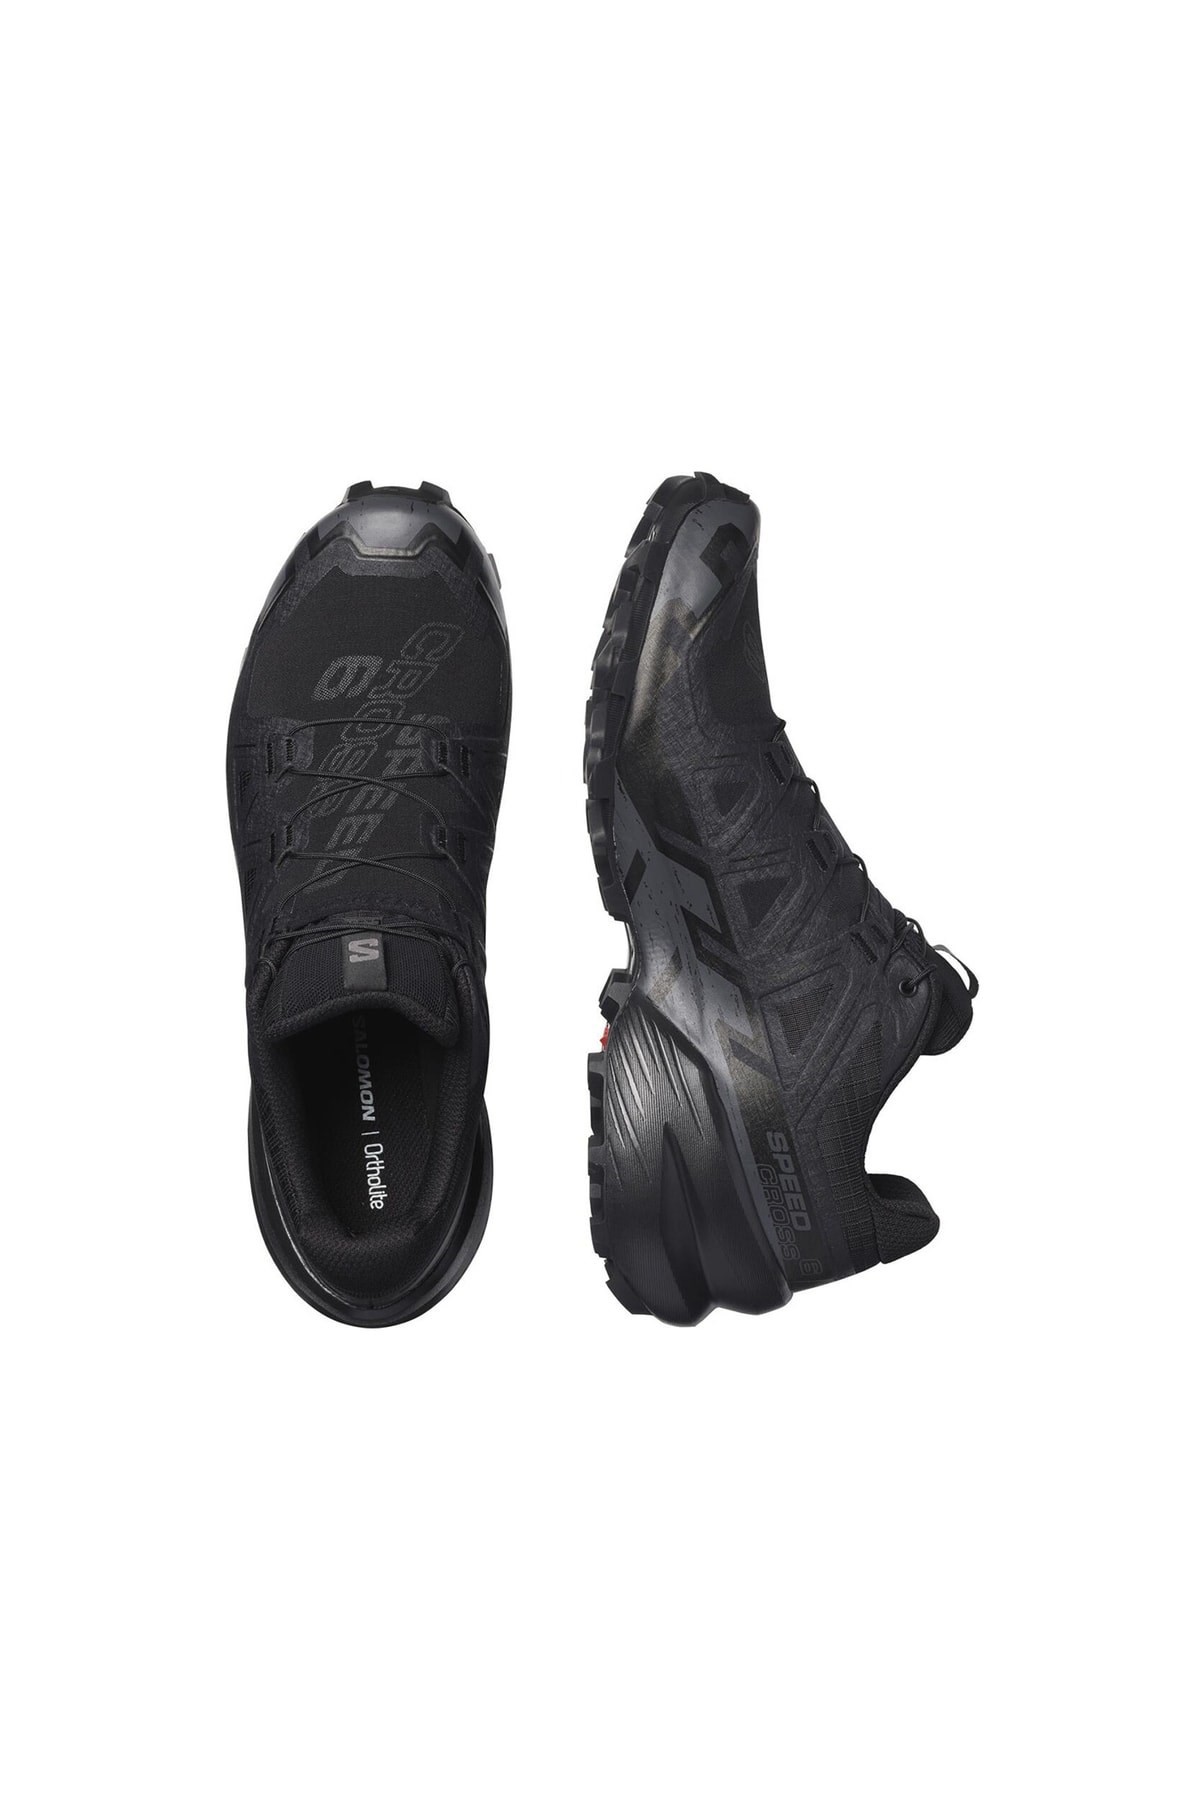 Salomon Speedcross 6 Erkek Patika Koşu Ayakkabısı L41737900